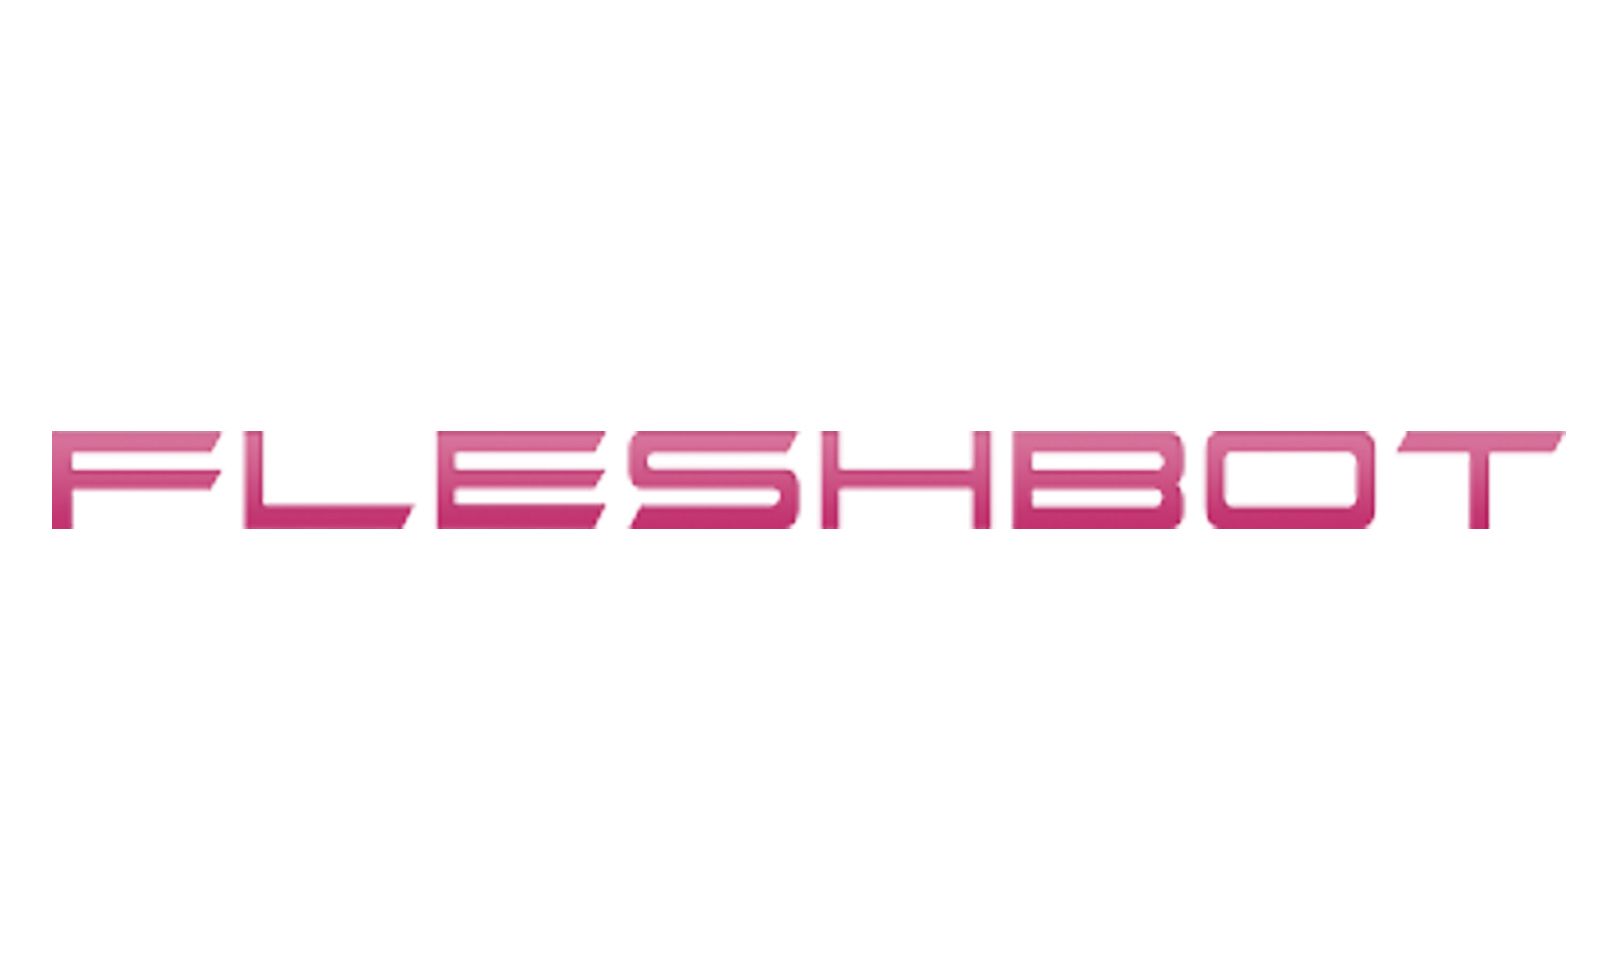 Fleshbot Awards Winners for 2018 Announced